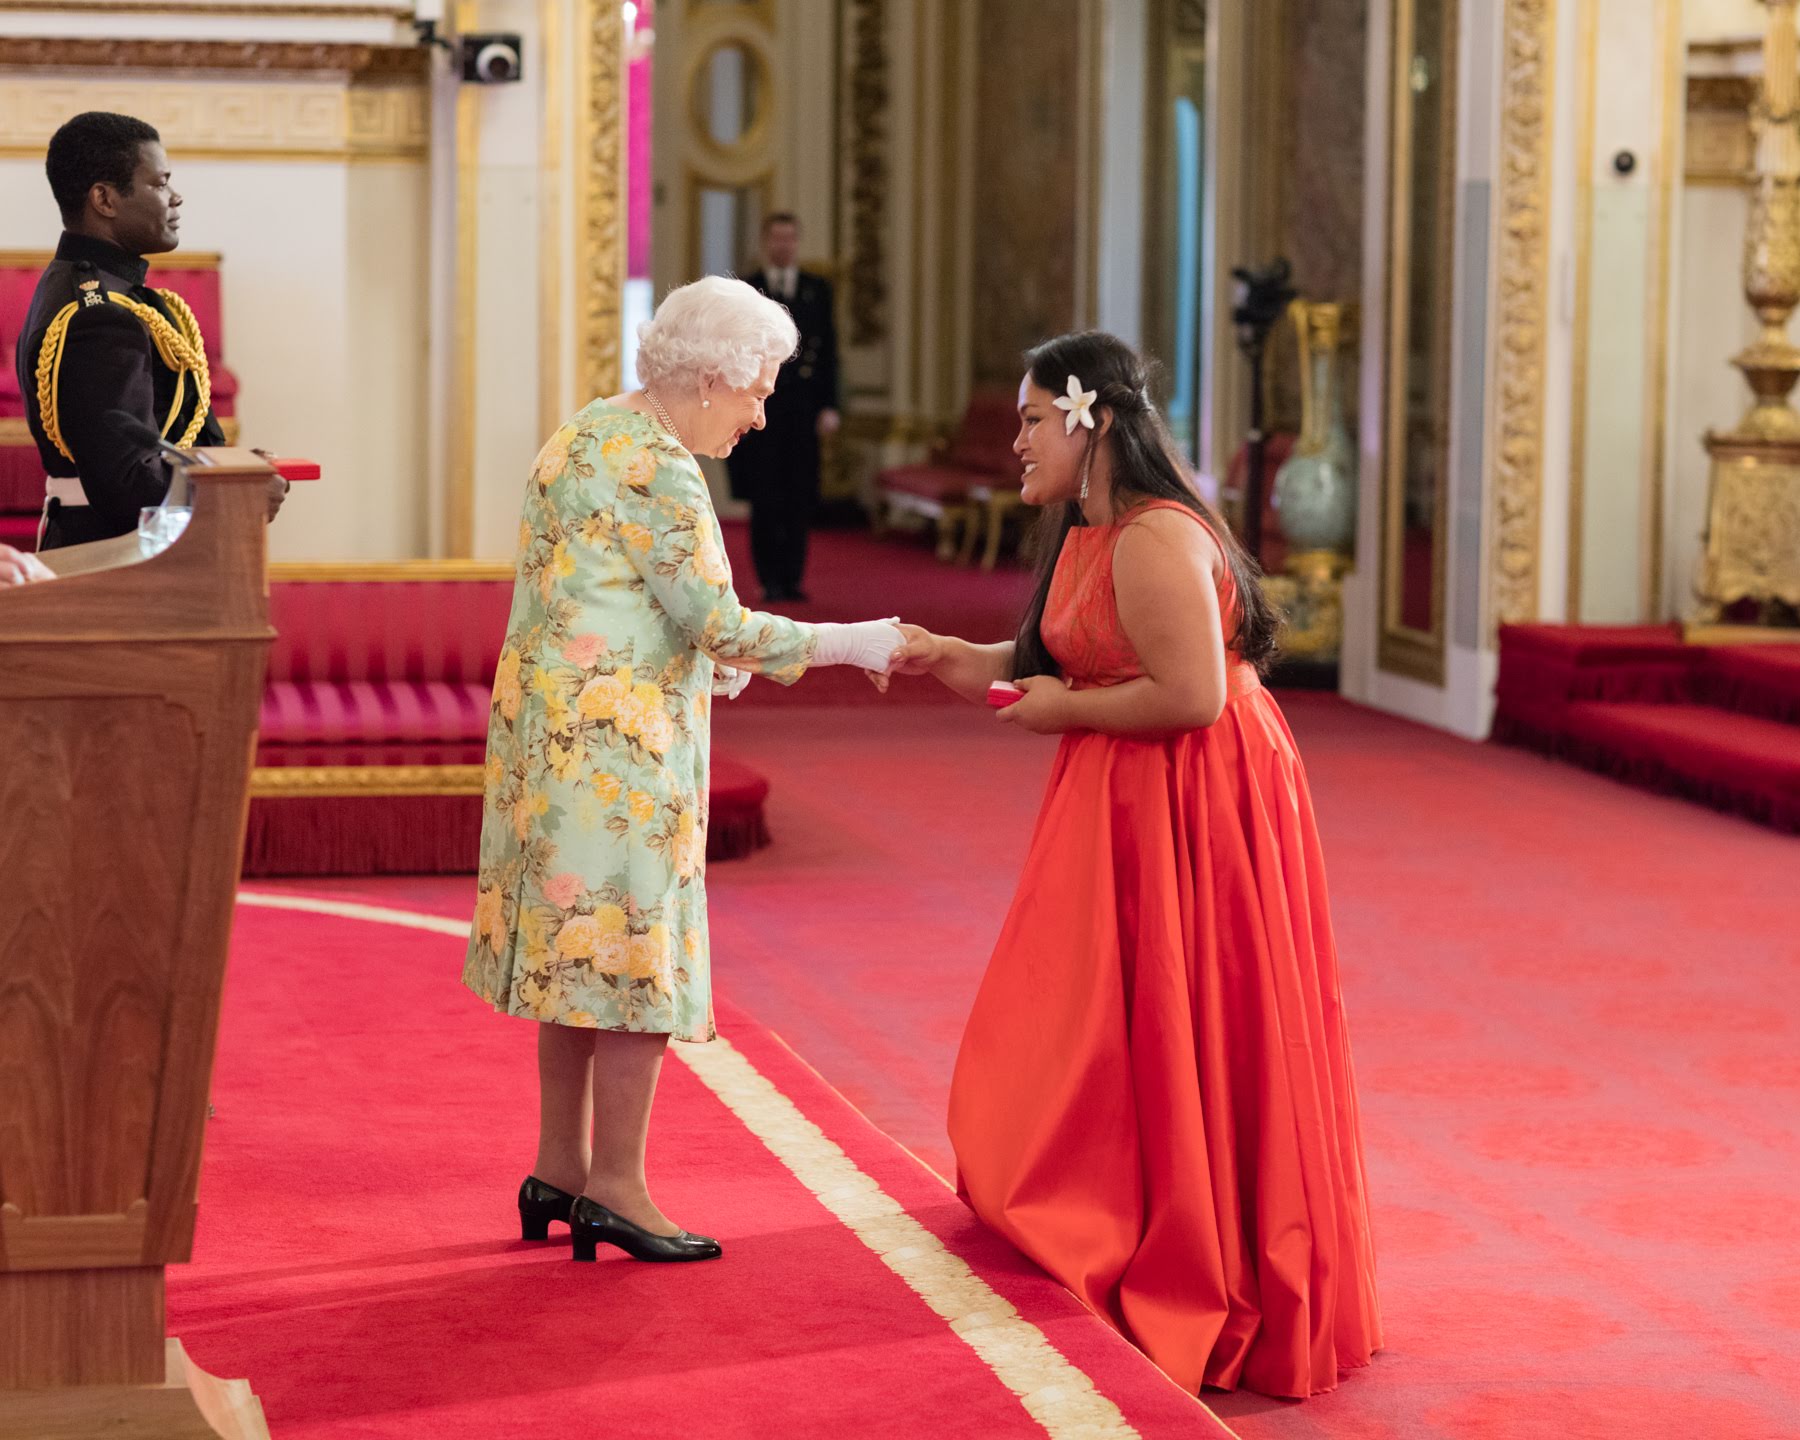 Petronilla Molioo Maraeliga 2018 Queen's Young Leader from Samoa